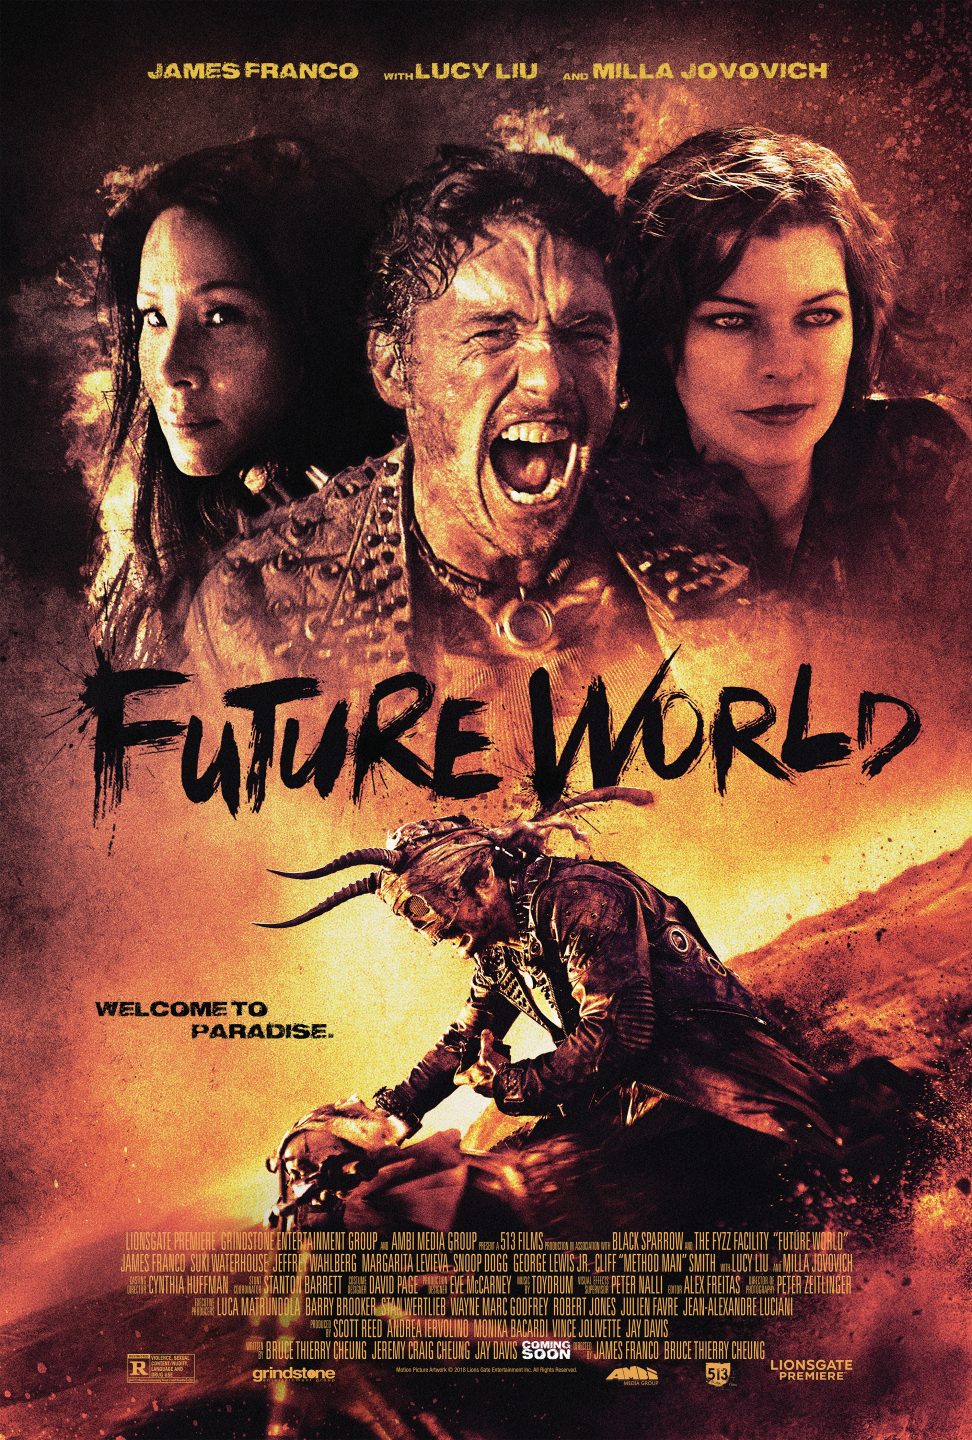 Future World poster (Lionsgate Premiere)